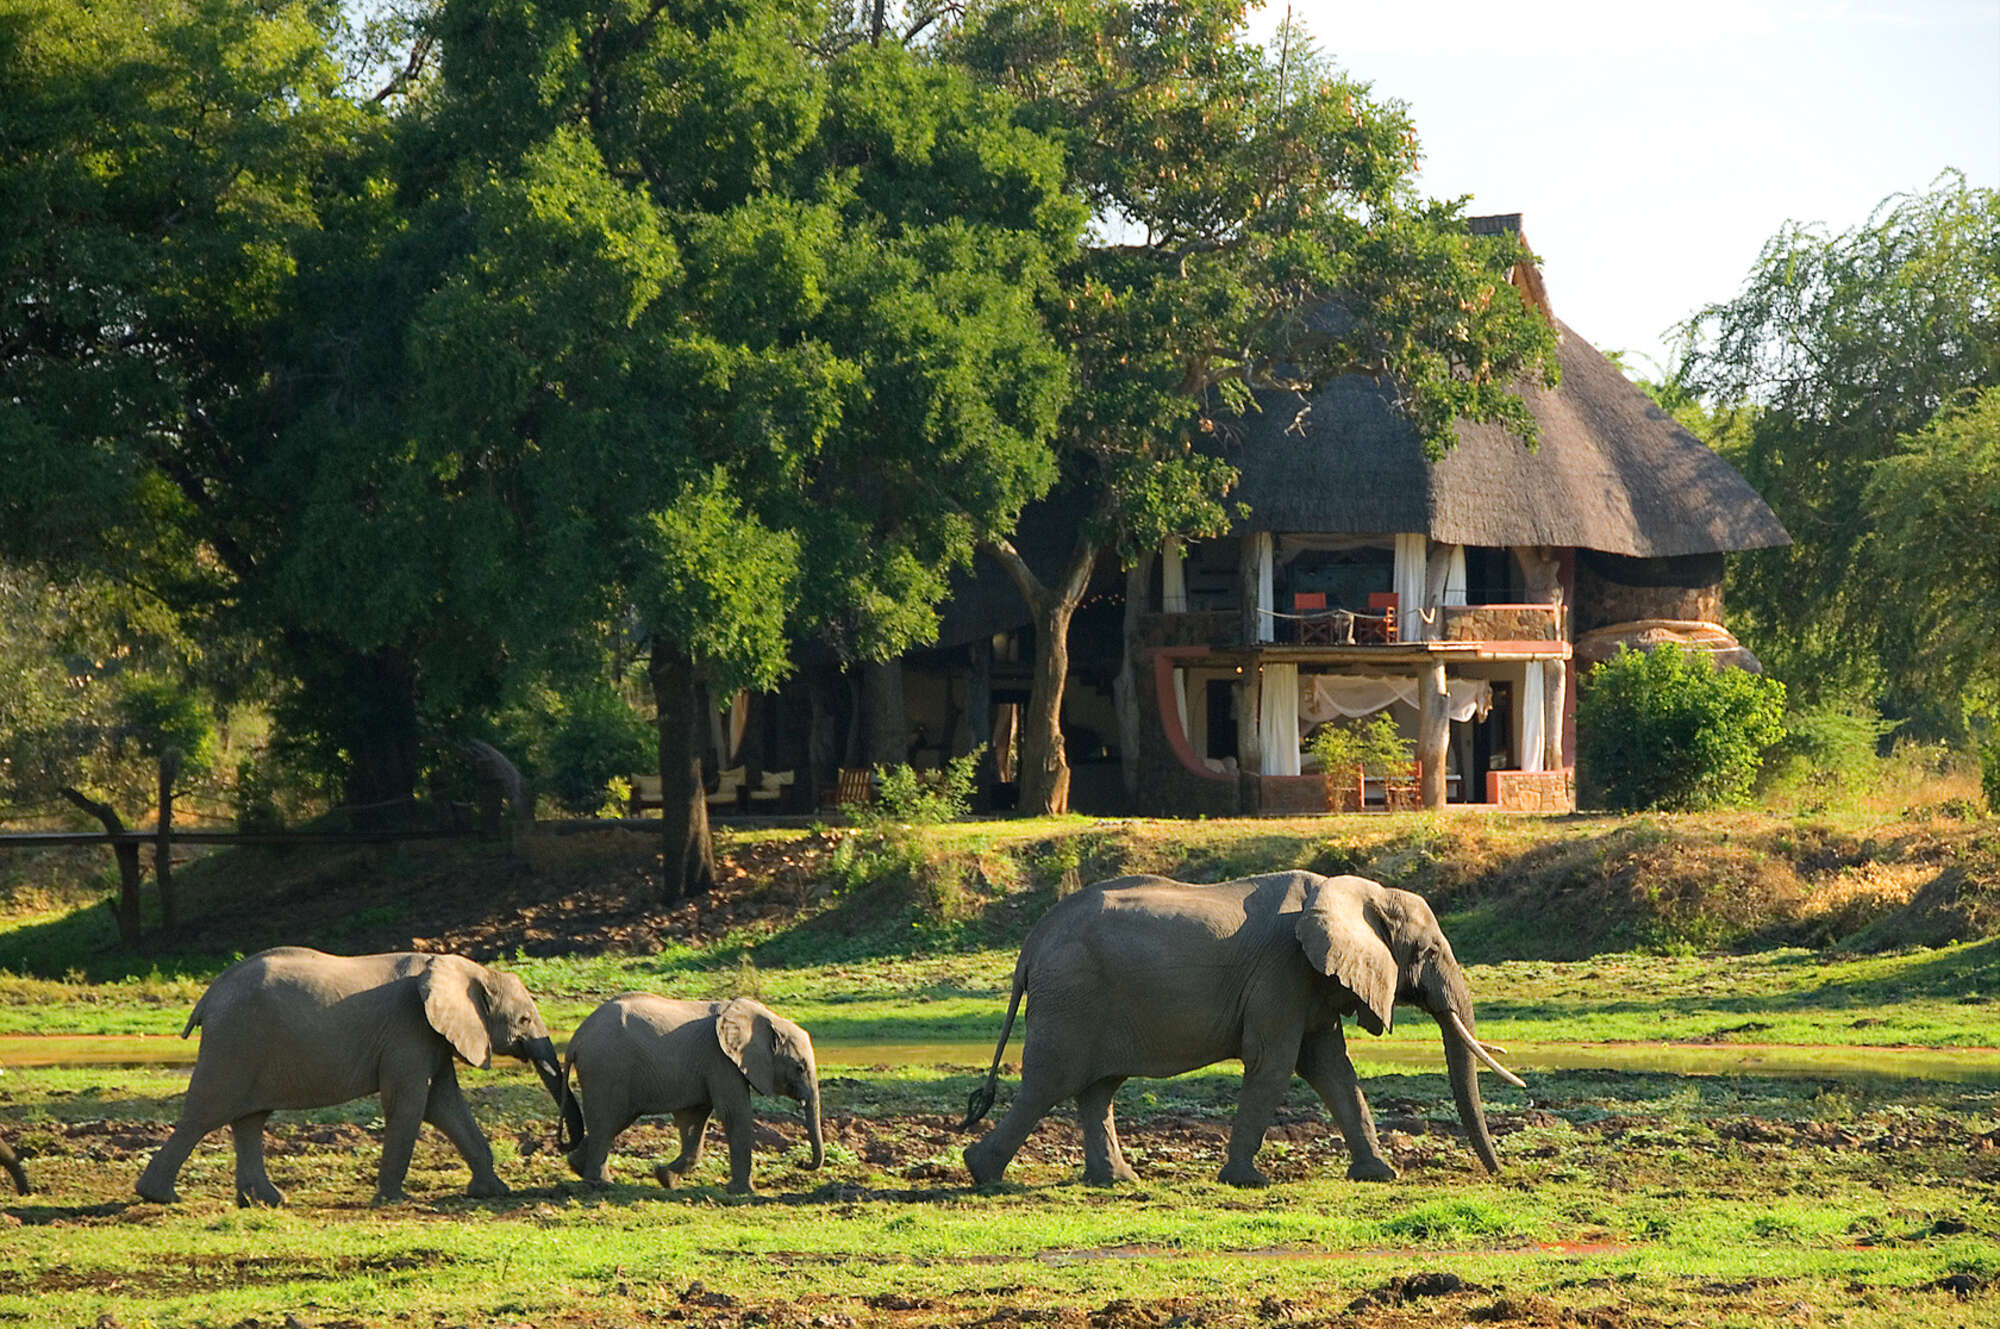 zambia safari cost